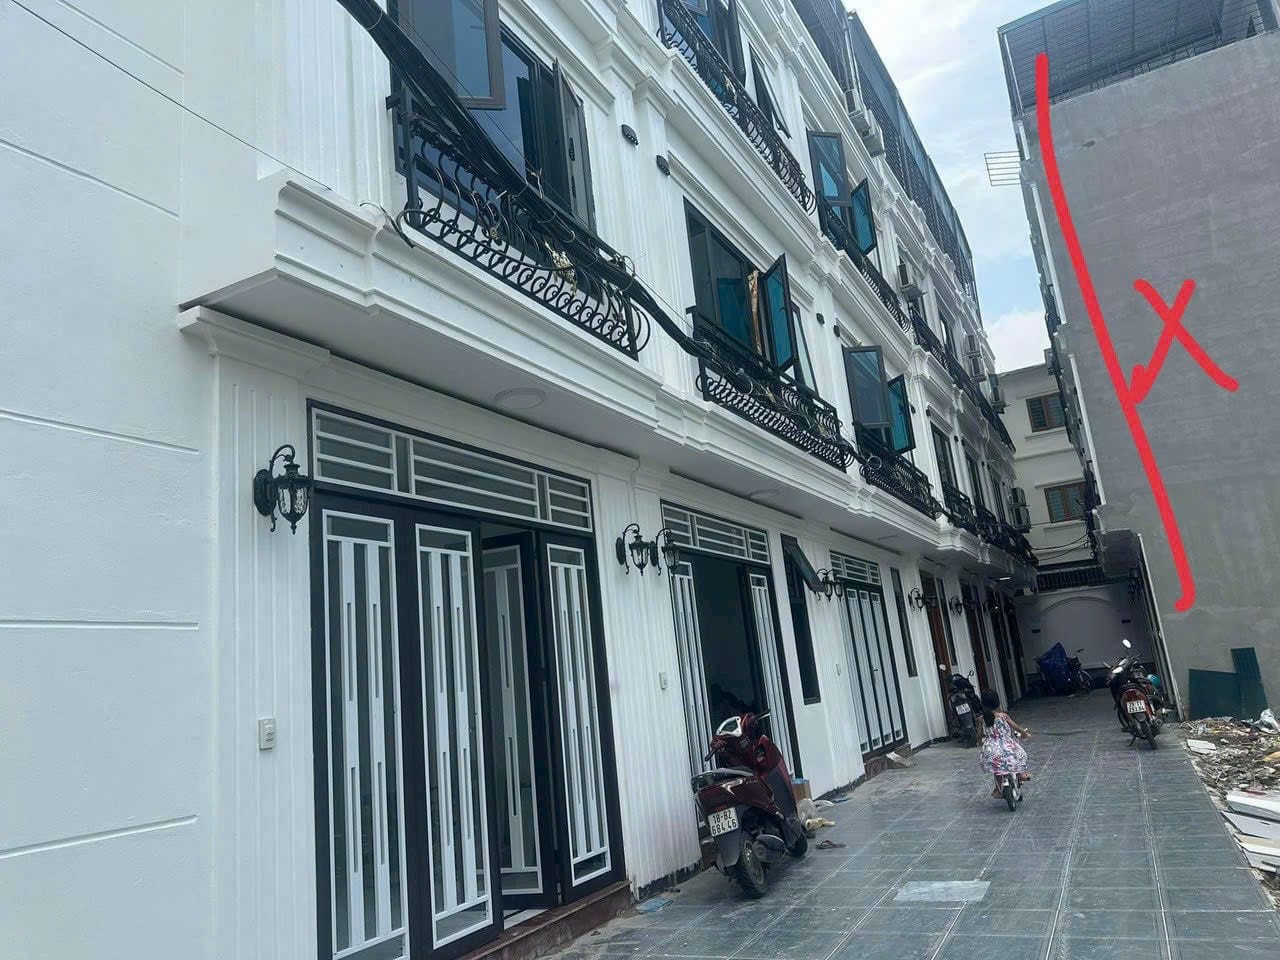 Cc gửi bán Nhà 3.5 tầng tại Tràng An, tt Chúc Sơn 40.8m2, 2.x tỷ, ô tô đỗ cửa - Ảnh 1